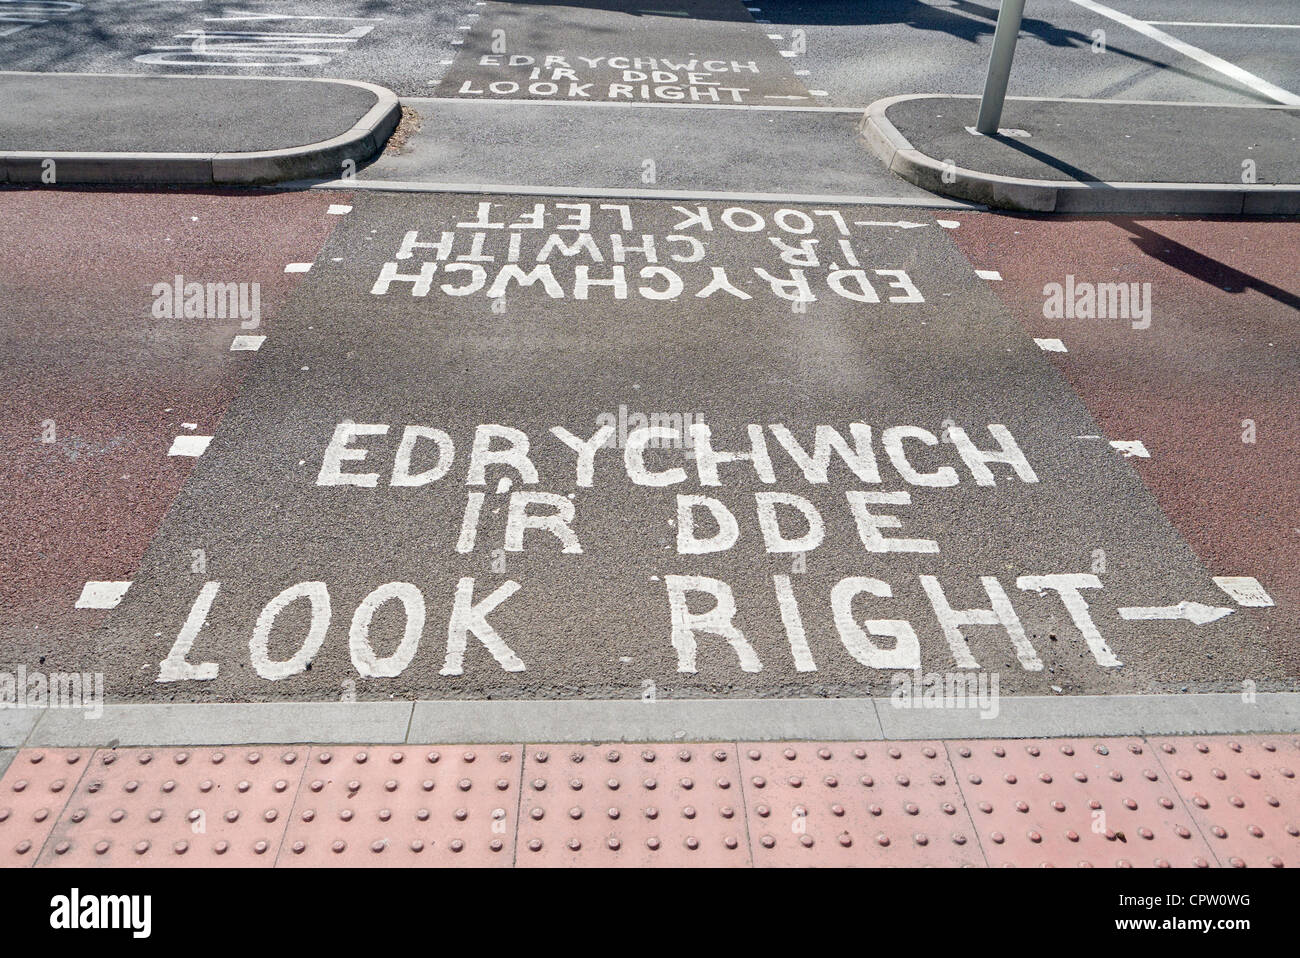 Edrychwch Ir Dde, Walisisch und Englisch Fußgänger Straßenschild an der Ampel rechts, zu suchen. Stockfoto